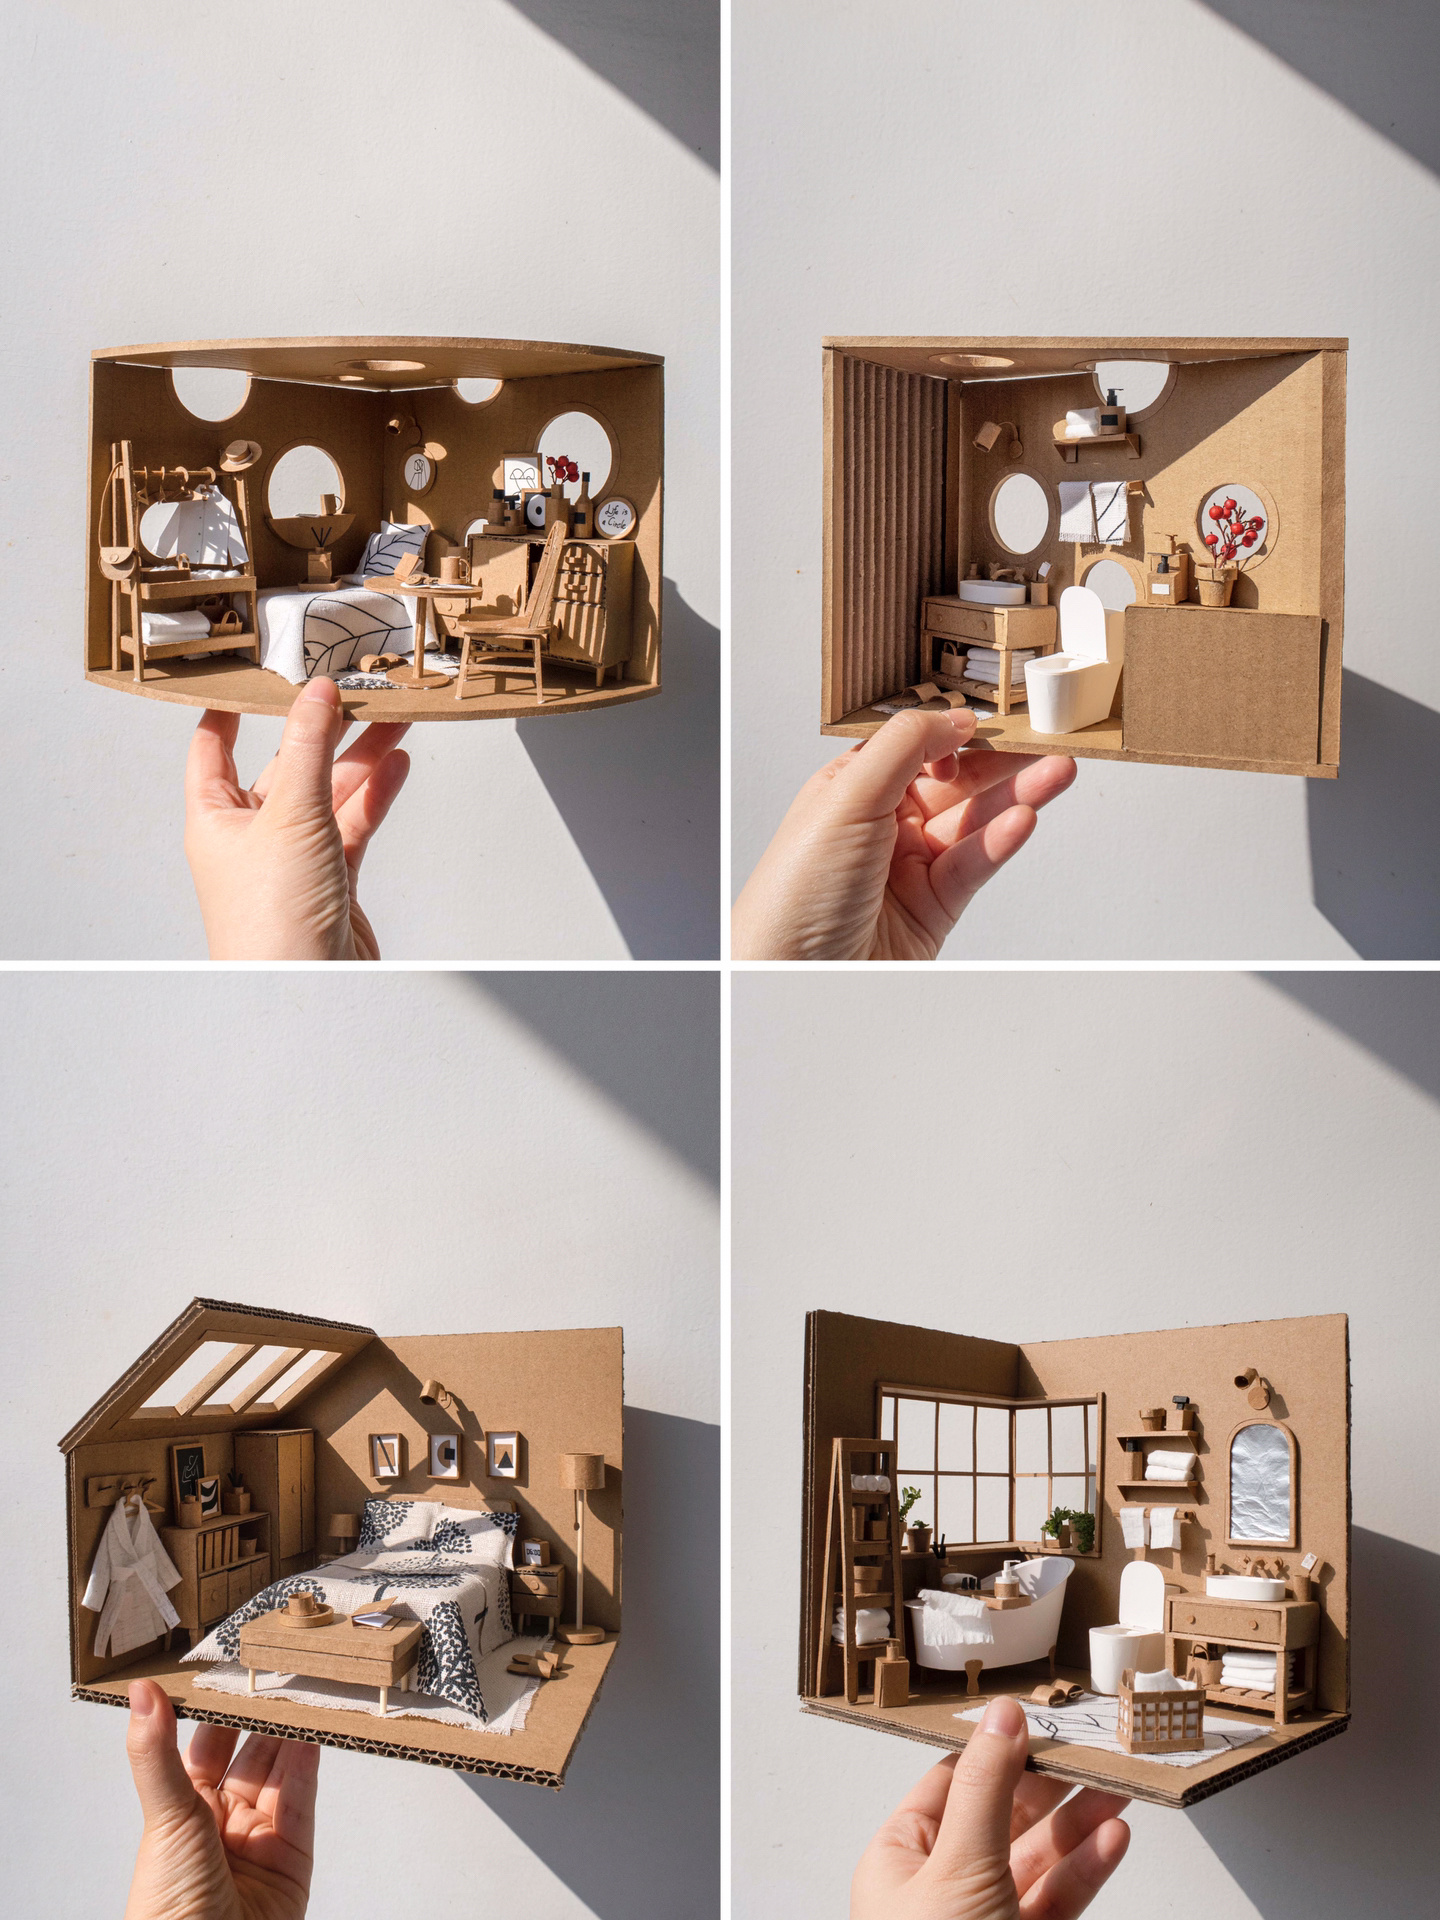 快递盒小房子:可爱又奇怪的纸箱创意!